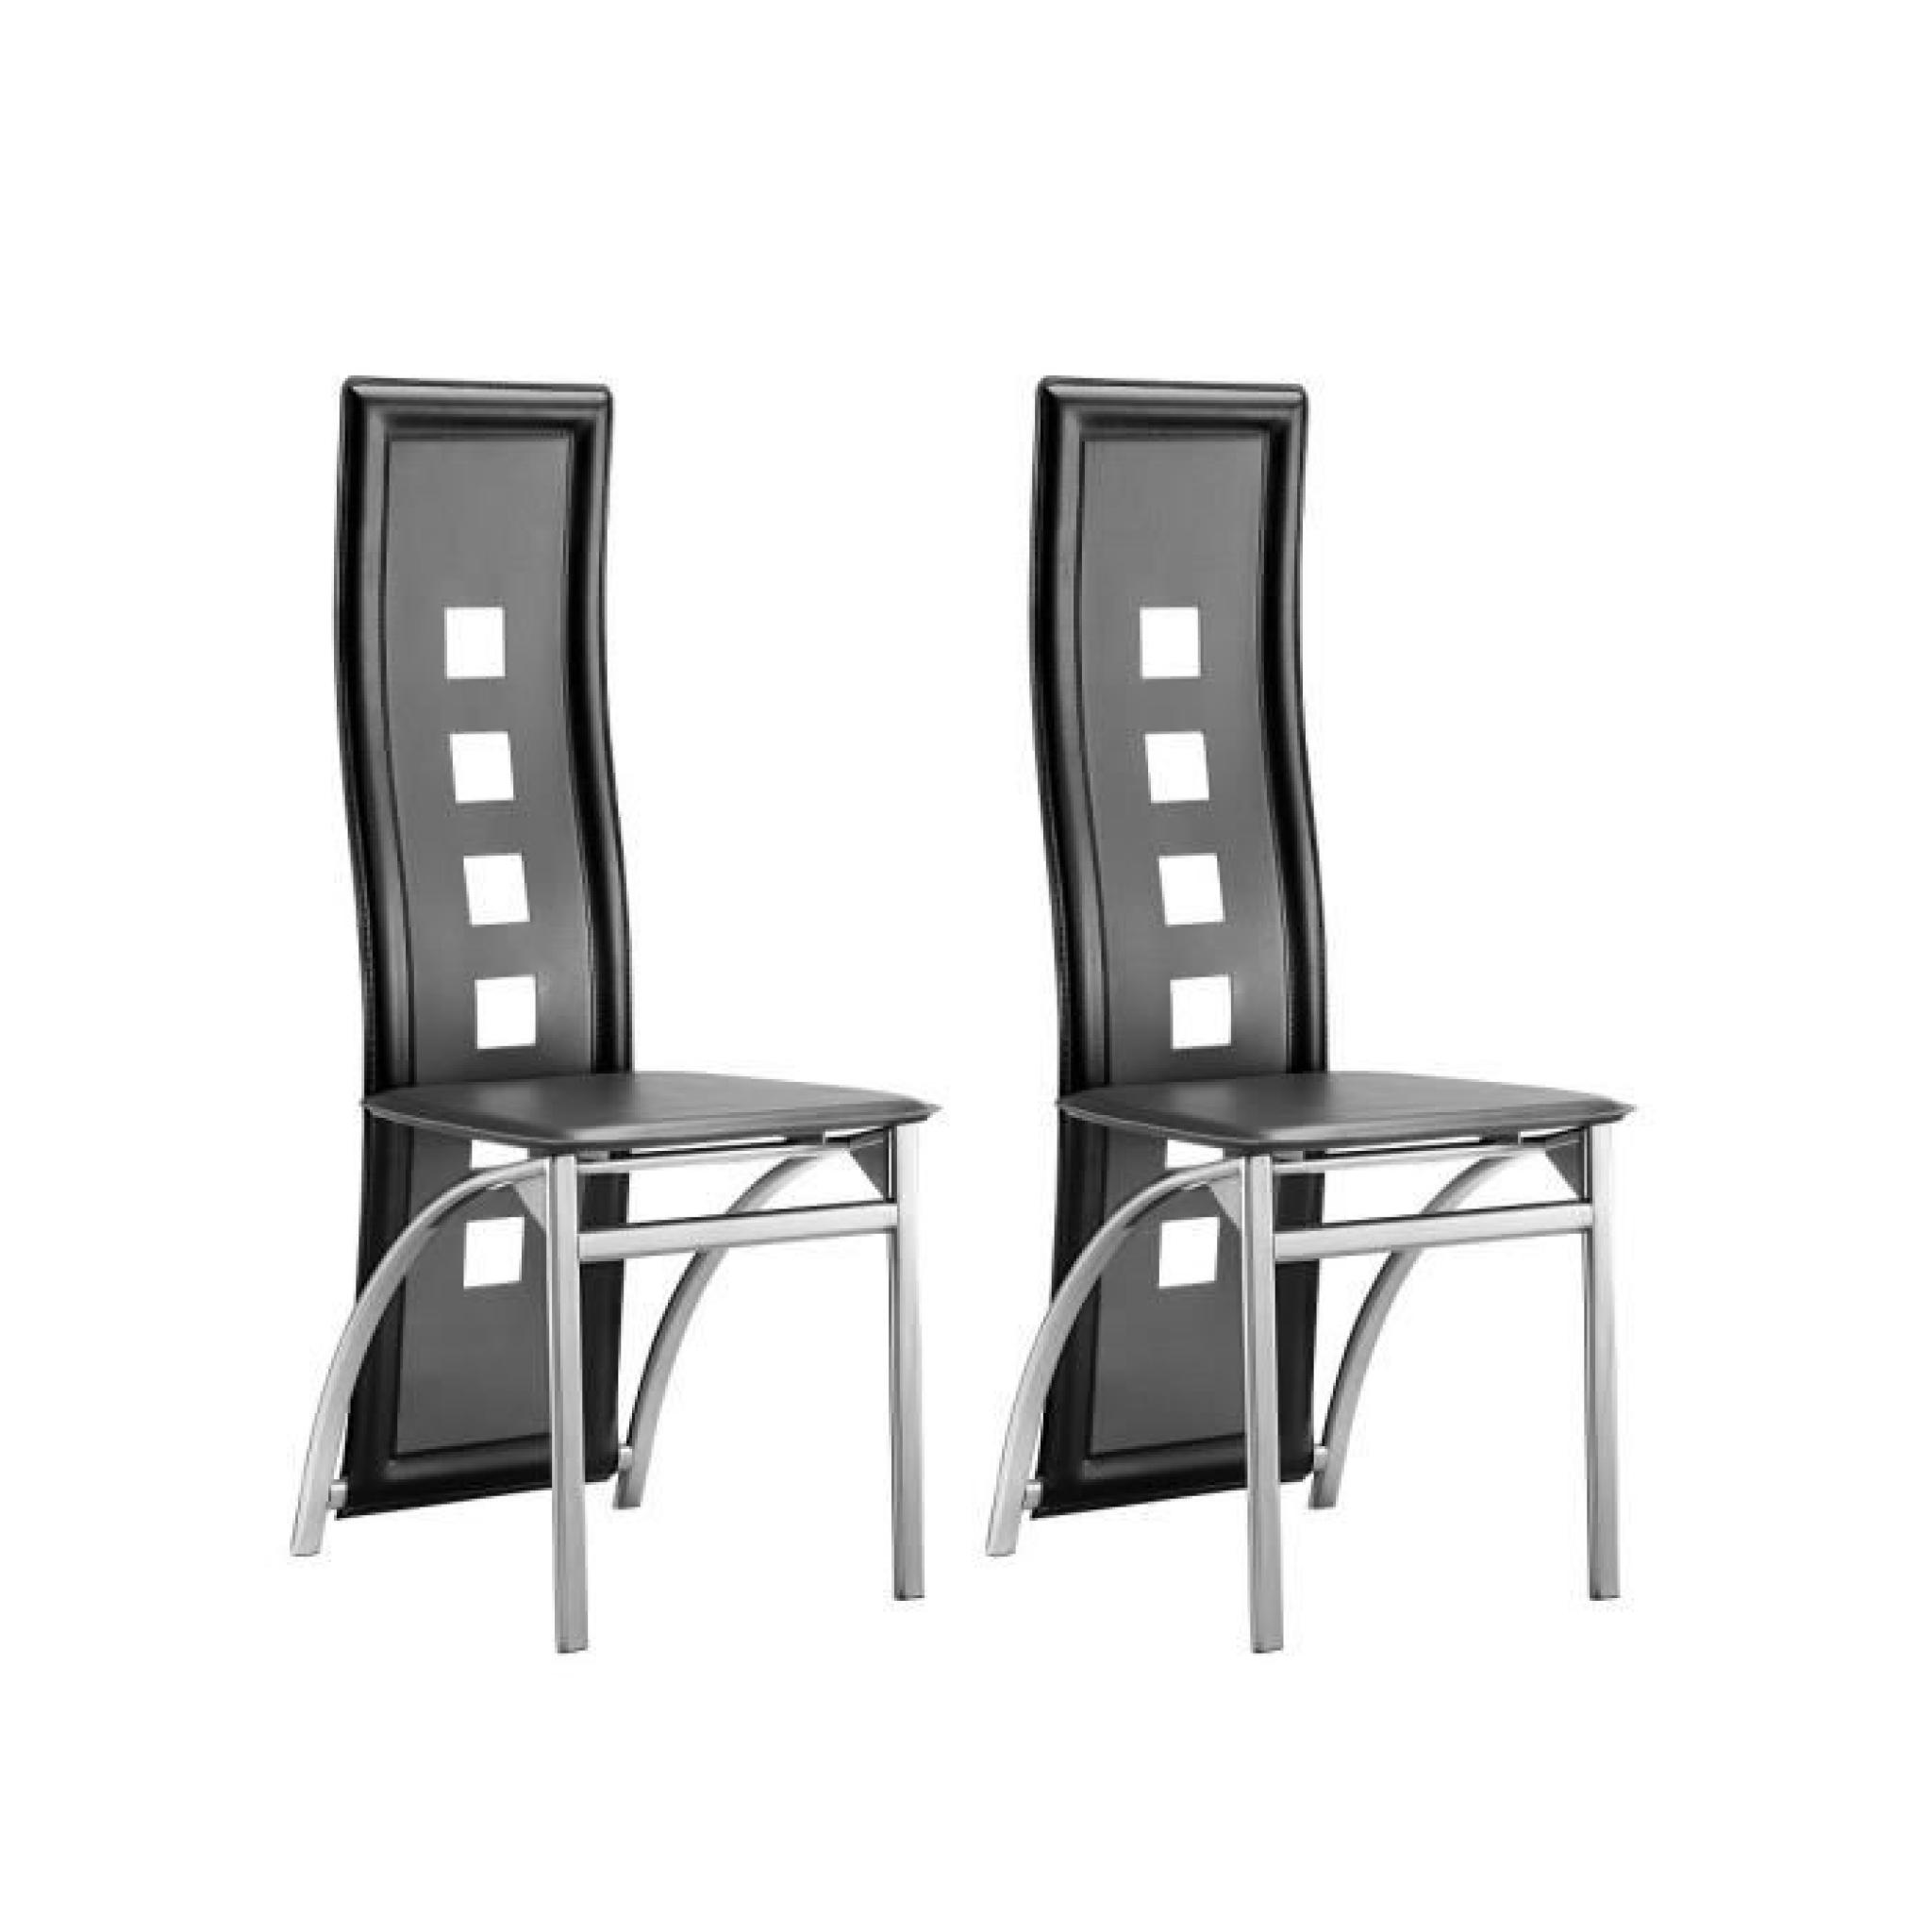 EIFFEL lot de 2 chaises de salle à manger noires et blanches simili et aluminium - Design